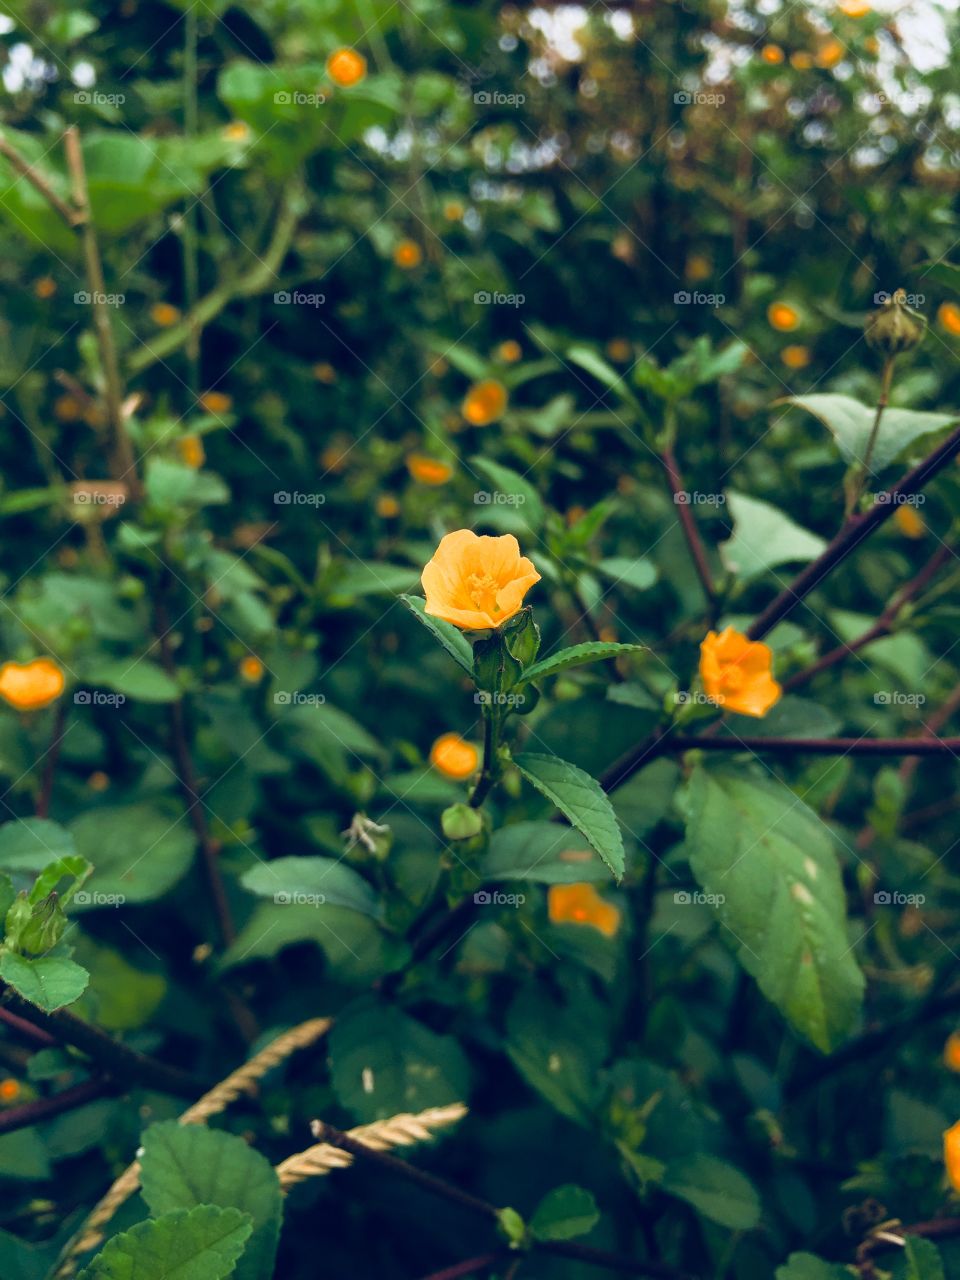 Yellow flower in my garden 